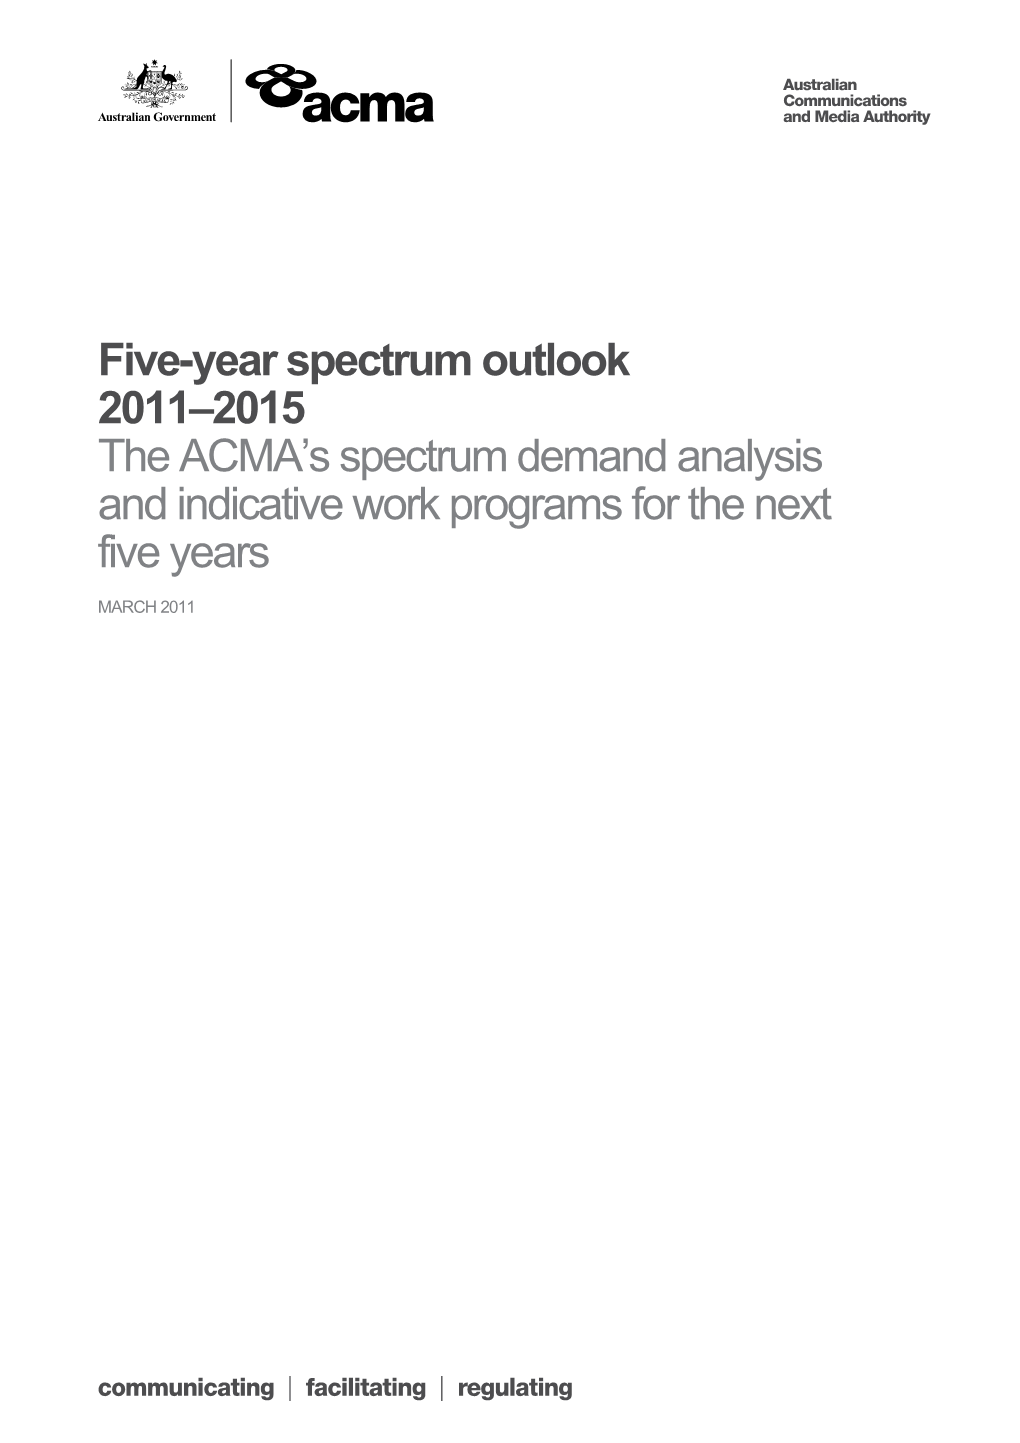 Five-Year Spectrum Outlook 2011-2015